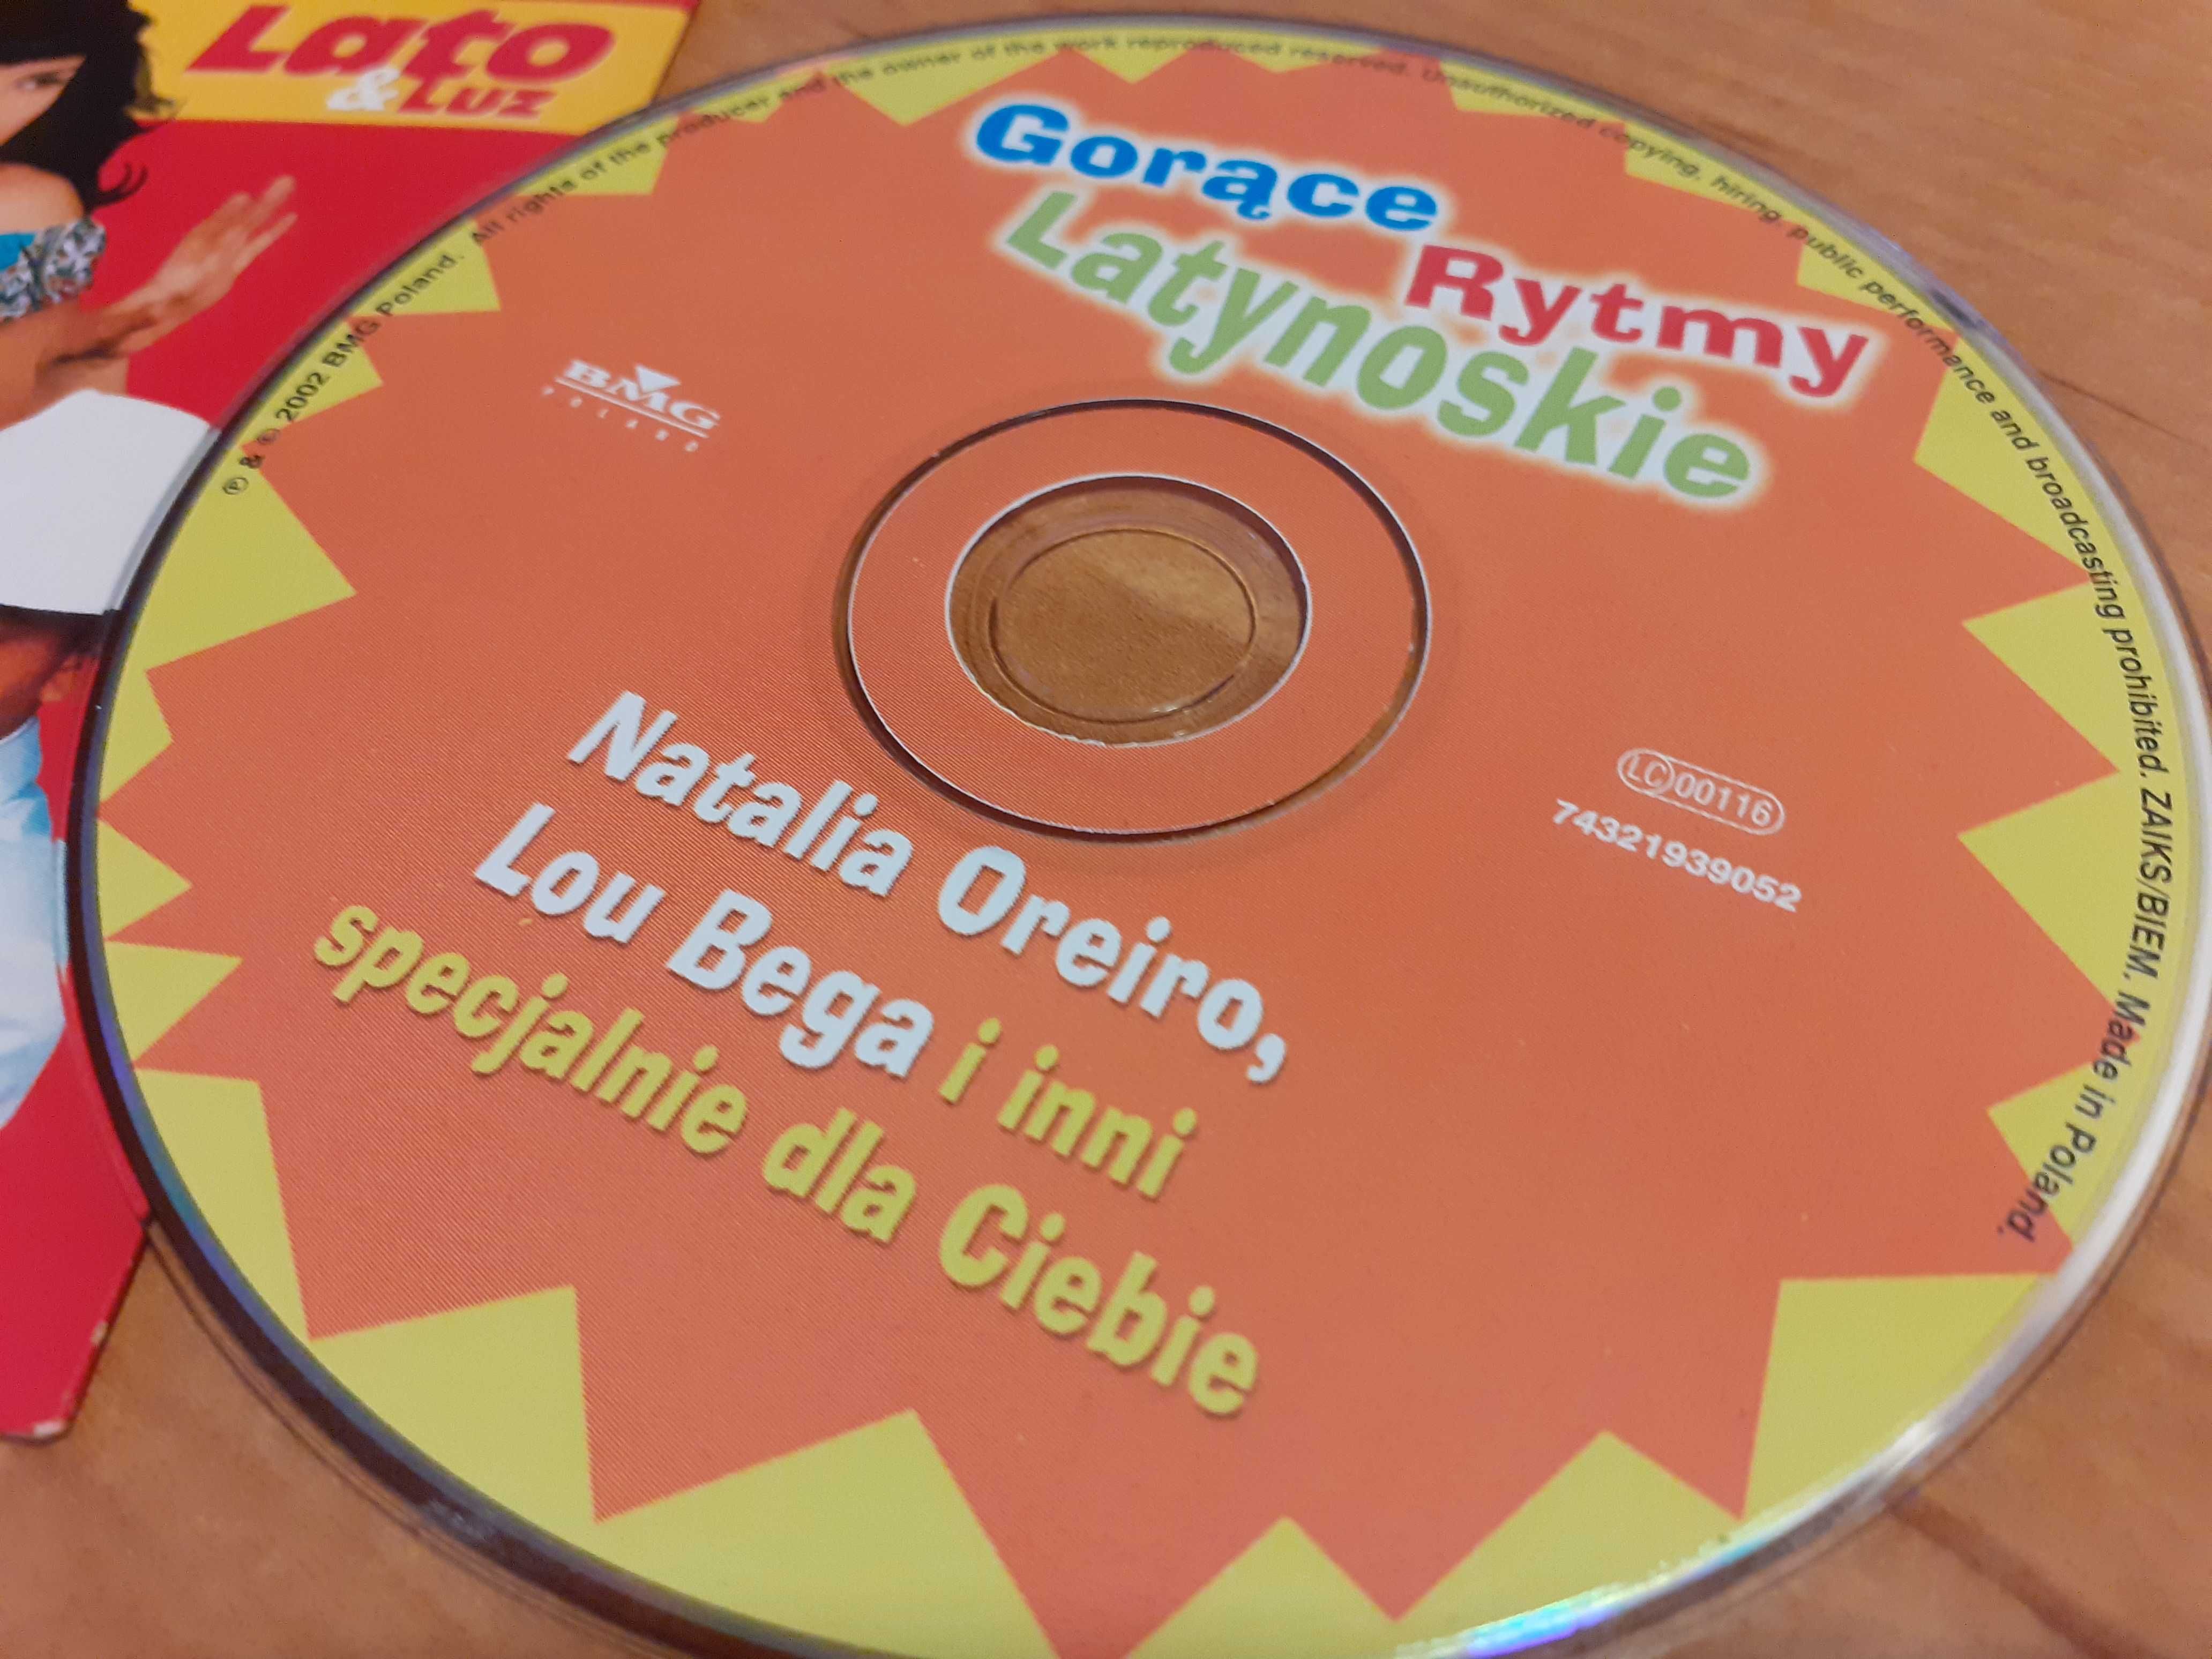 CD Dziewczyna Gorące Rytmy Latynoskie Natalia Oreiro Lou Bega 2000 r.